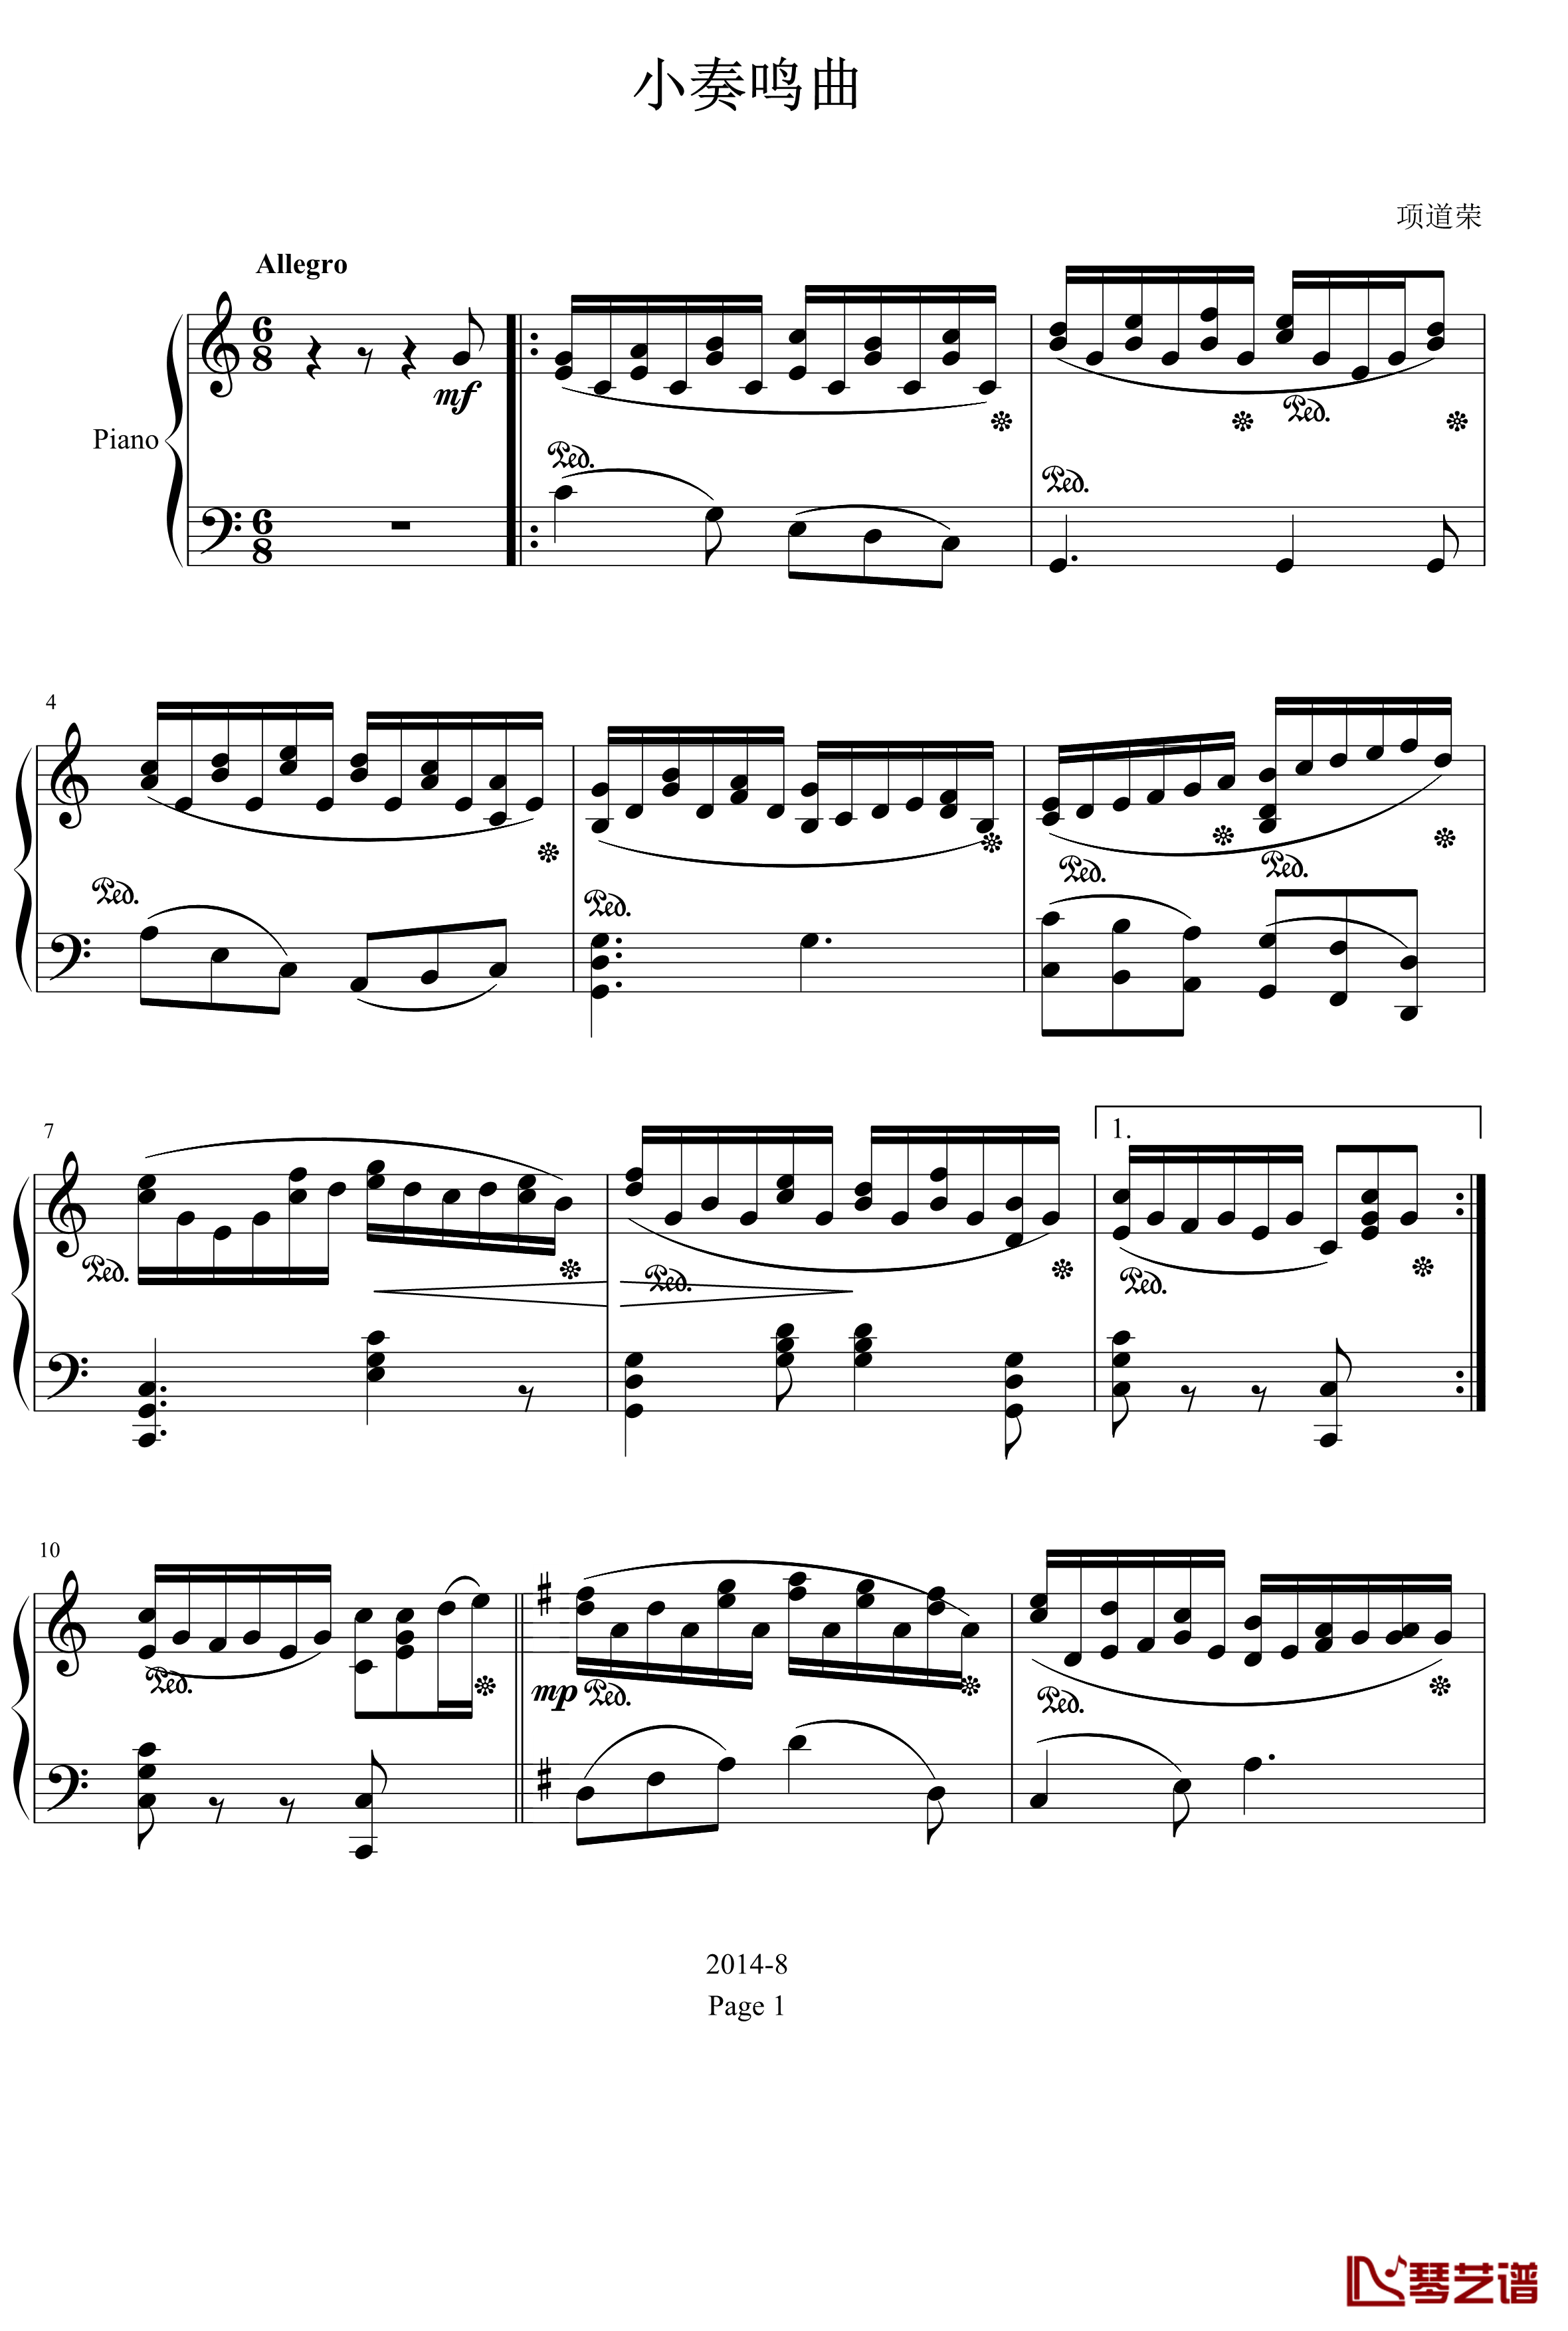 小奏鸣曲钢琴谱-C大调-项道荣